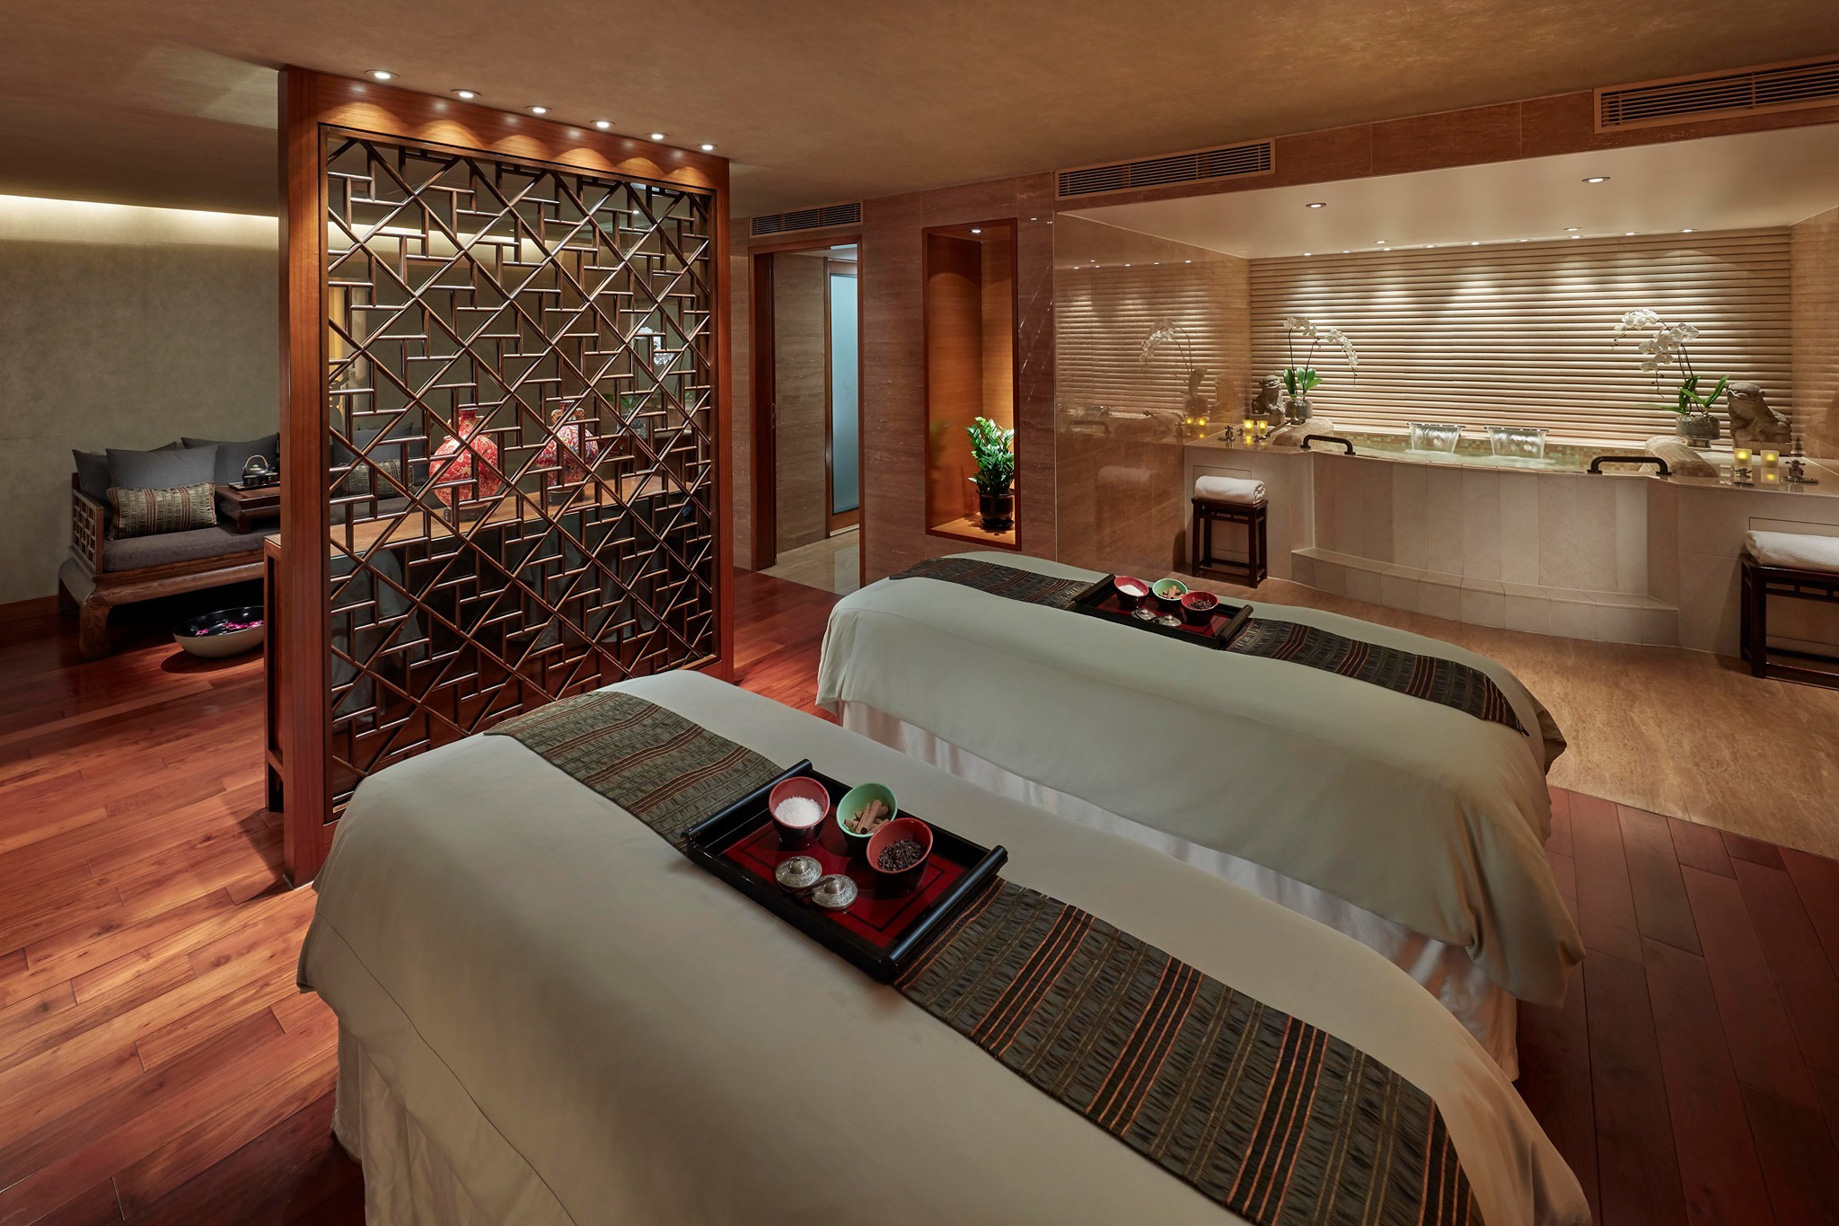 Mandarin Oriental, Hong Kong Hotel – Hong Kong, China – Spa Treatment Tables